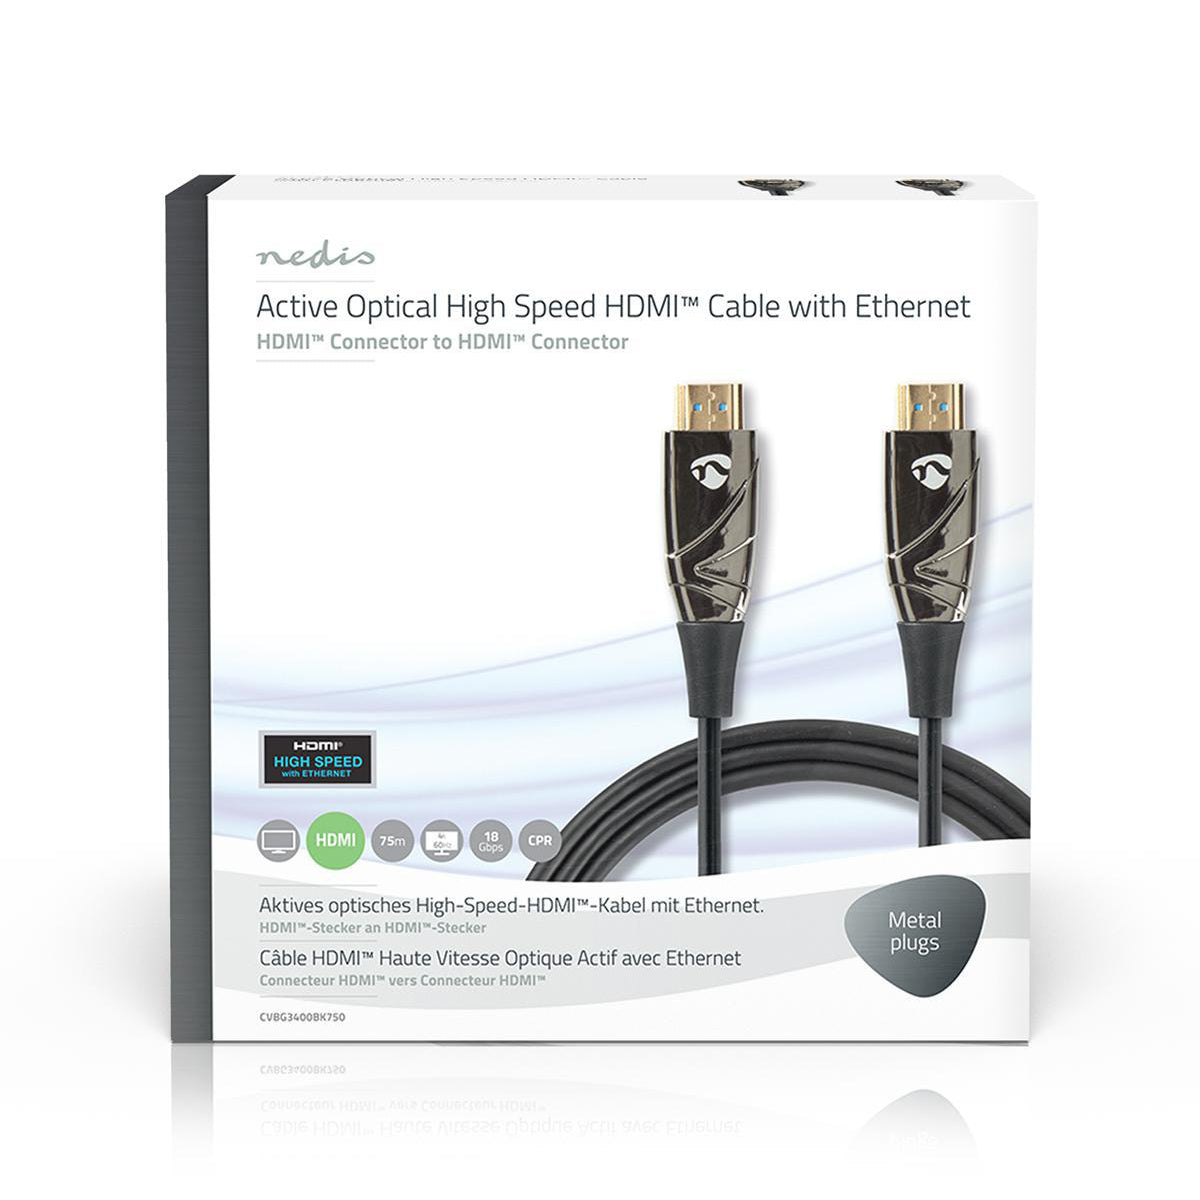 Aktive optische High Speed HDMI-Kabel mit Ethernet | HDMI™ Stecker | HDMI™ Stecker | 4K@60Hz | 18 Gbps | 75.0 m | Rund | PVC | Schwarz | Kartonverpackung